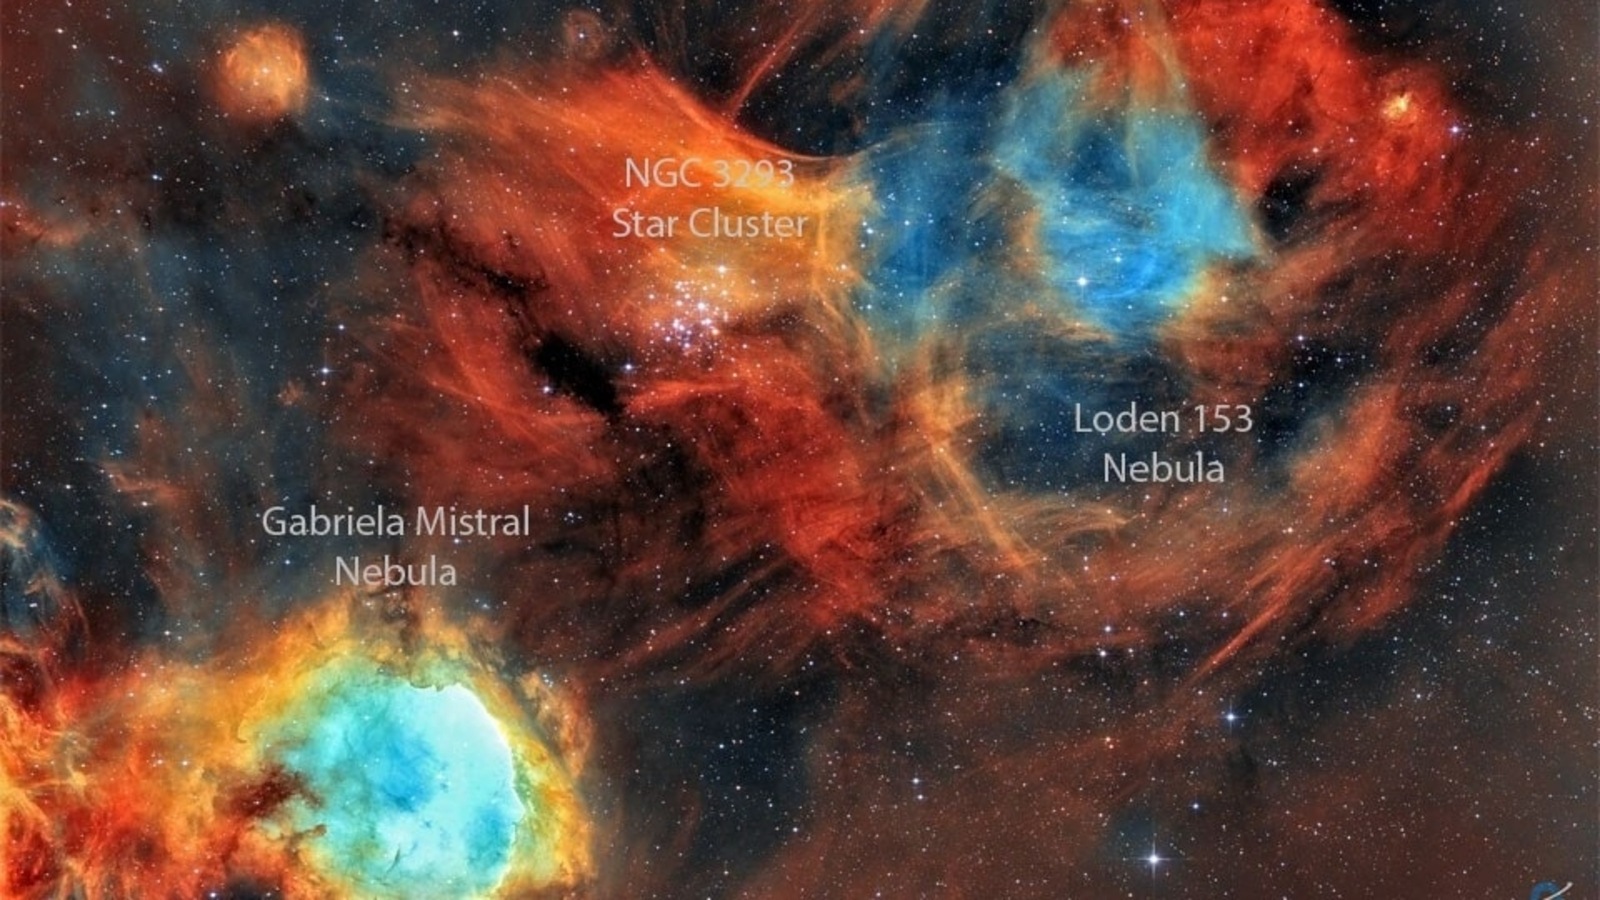 Foto Astronomi NASA yang Mempesona Minggu Ini: Lubang Hitam Supermasif, Galaksi Centaurus A, dan Lainnya